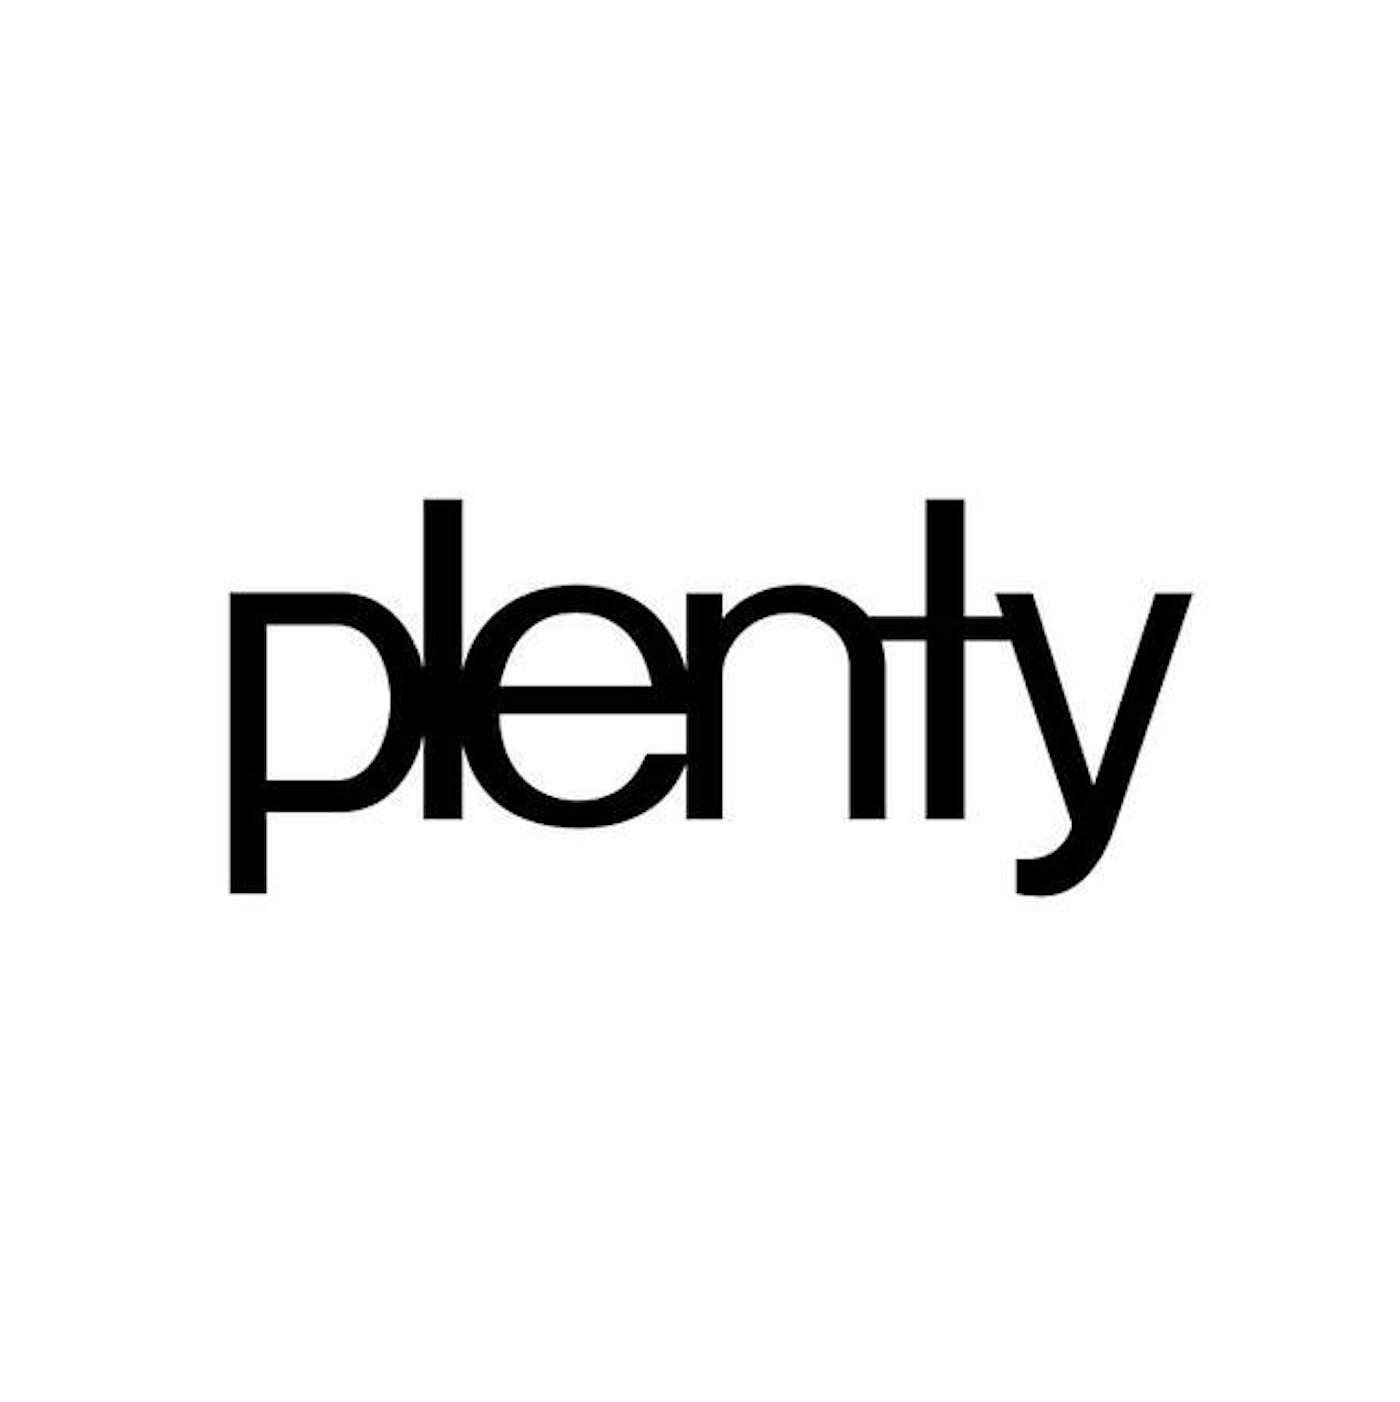 plenty